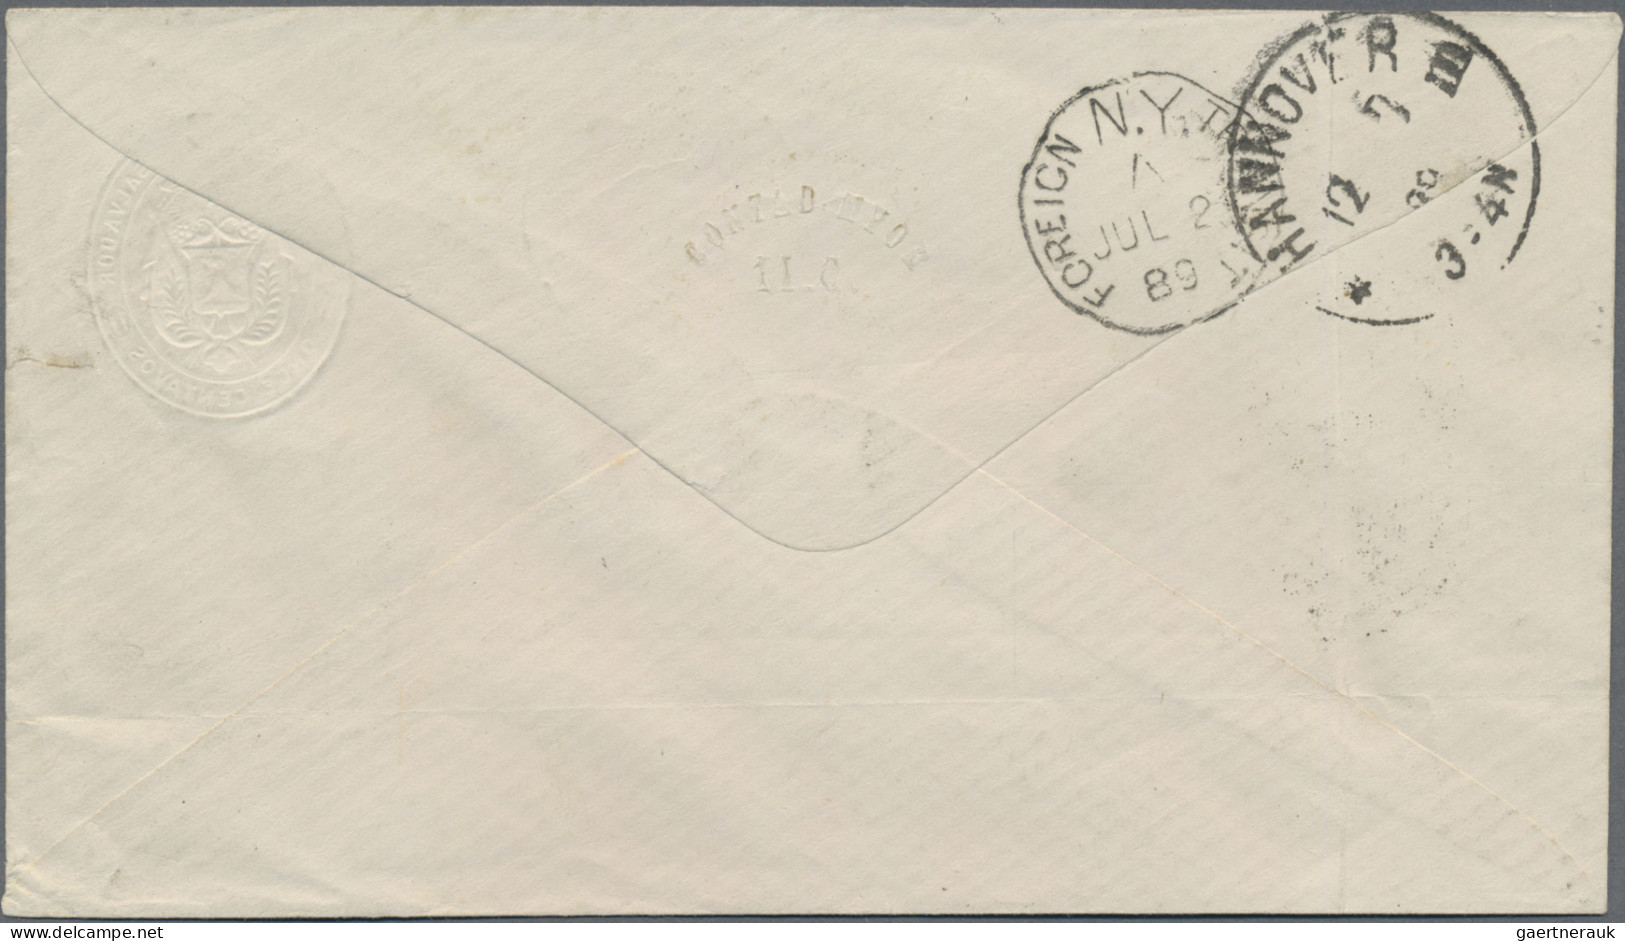 El Salvador - Postal Stationery: 1887 Postal Stationery Envelope On Private Orde - Salvador